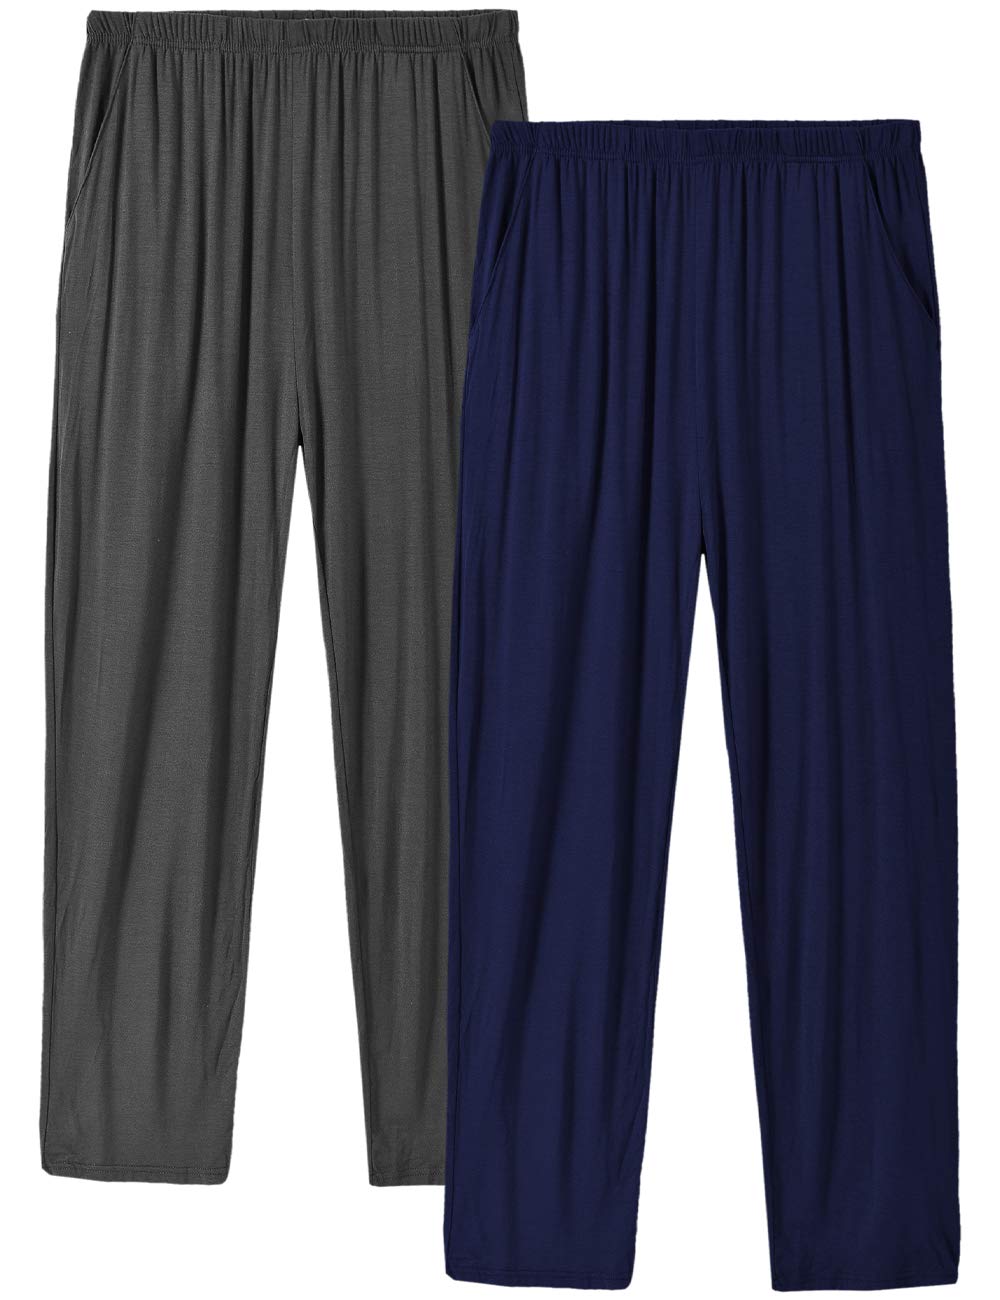 boutique en ligne MoFiz Pyjama Homme Shorts Bas de Pyja